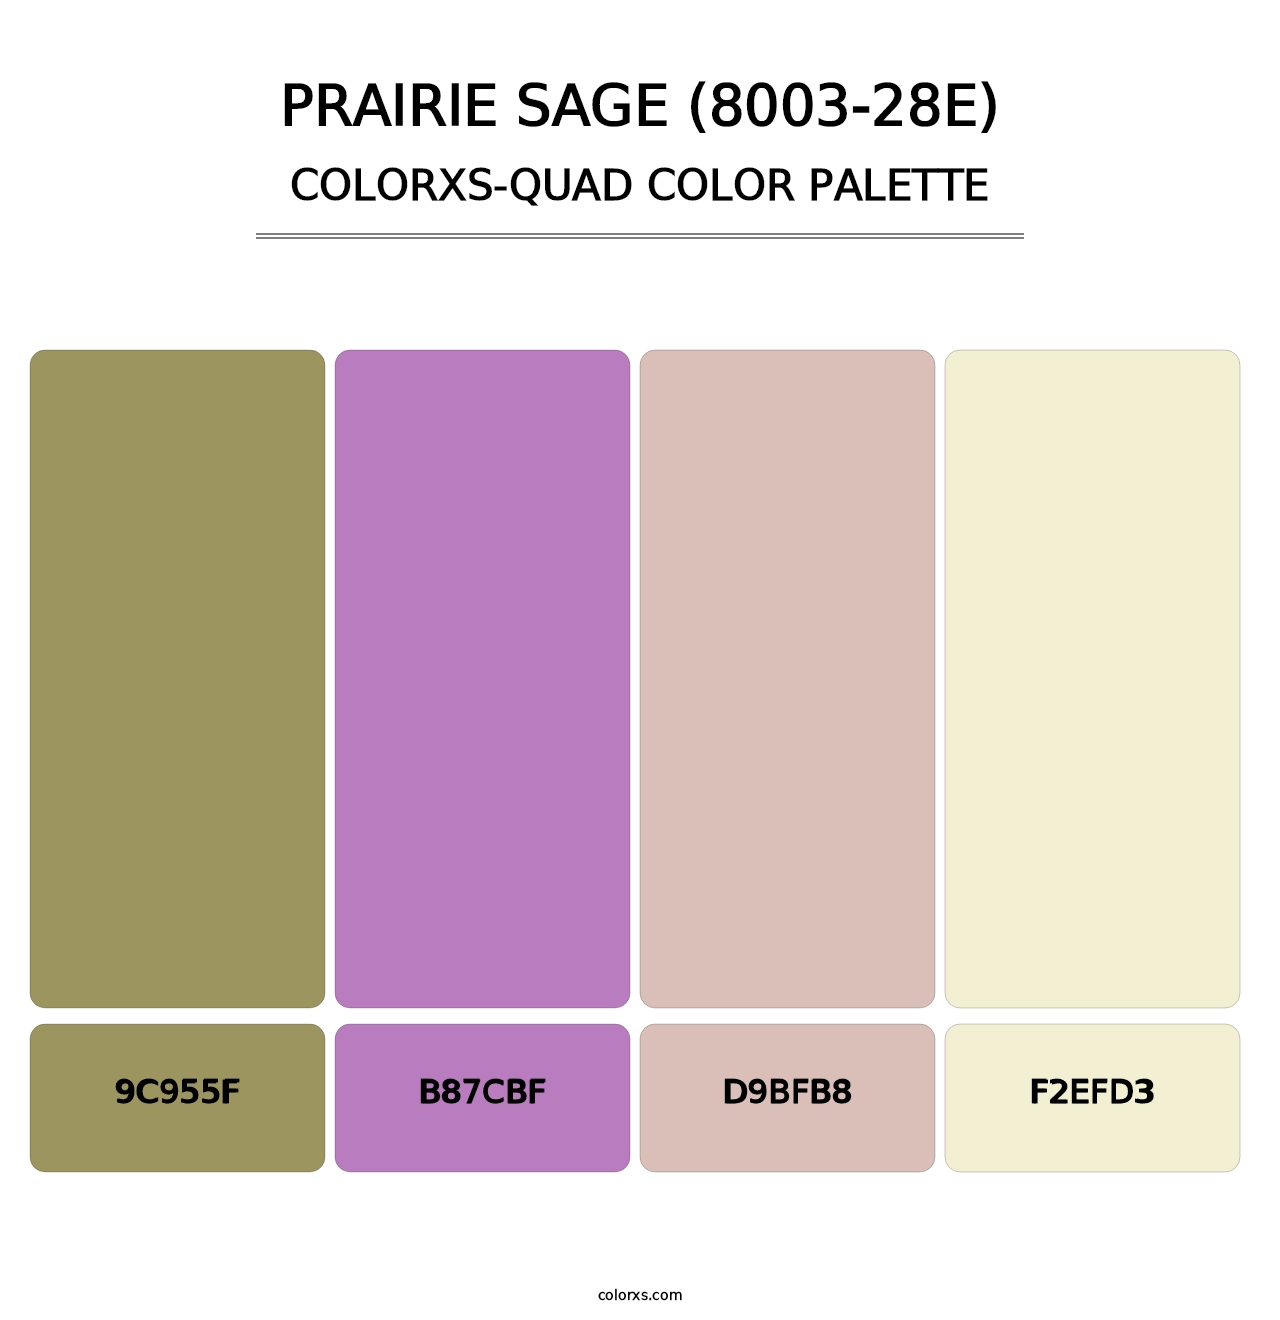 Prairie Sage (8003-28E) - Colorxs Quad Palette